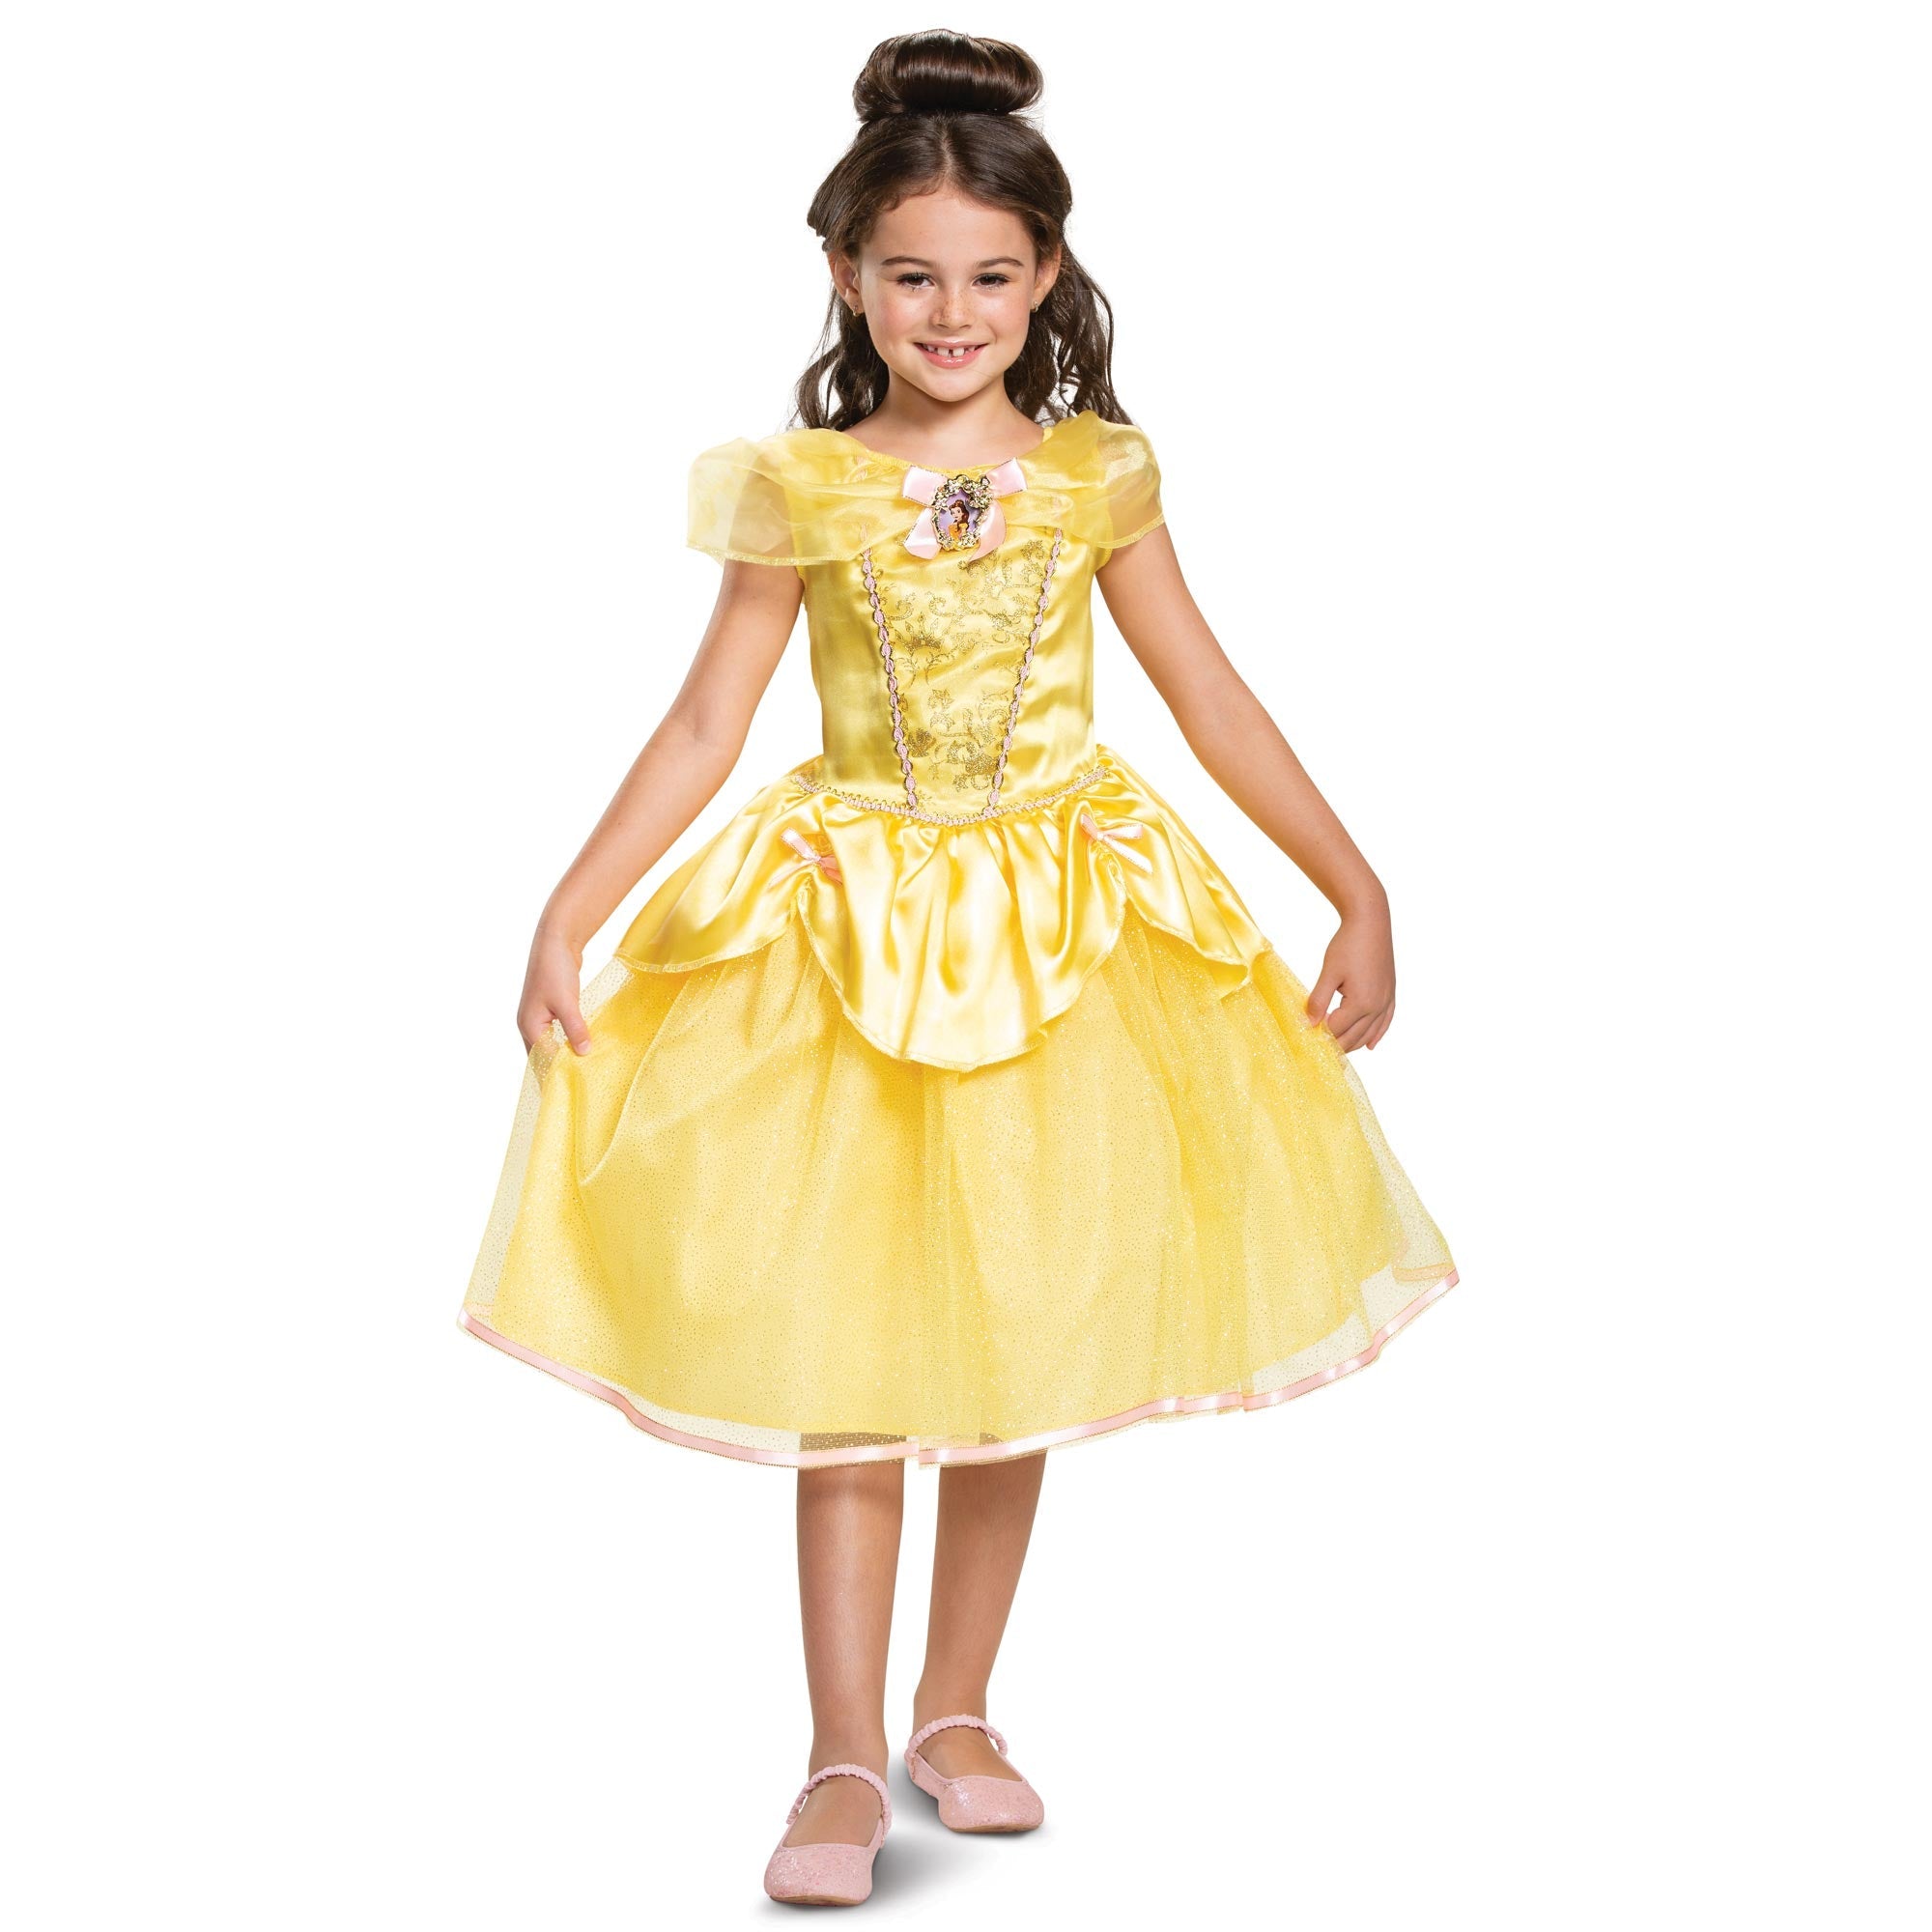 Child Belle Classic Costume